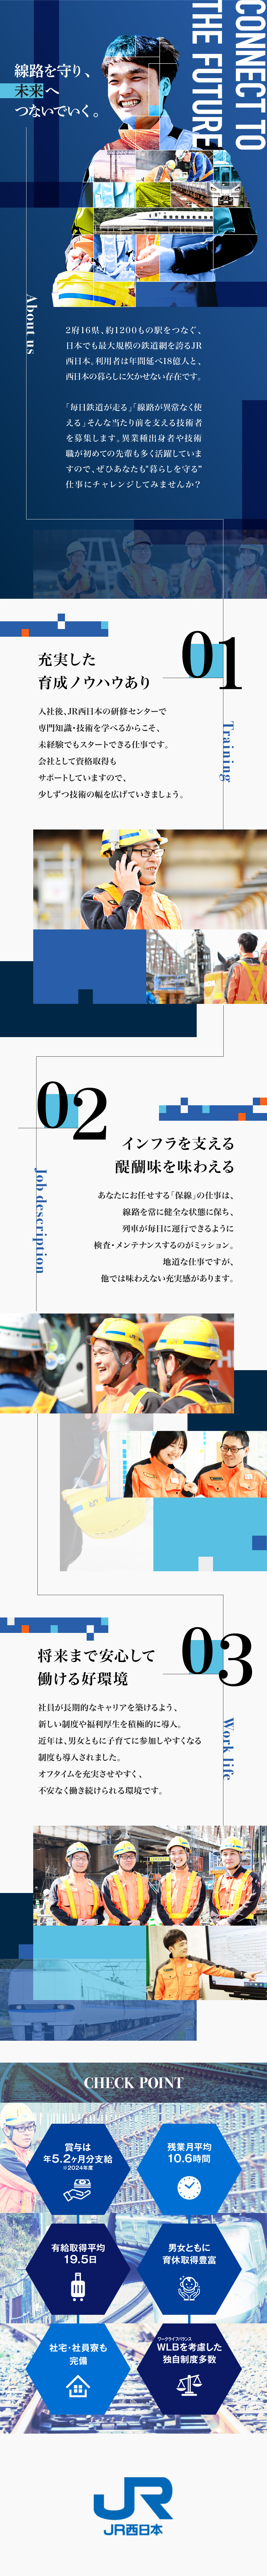 西日本旅客鉄道株式会社からのメッセージ